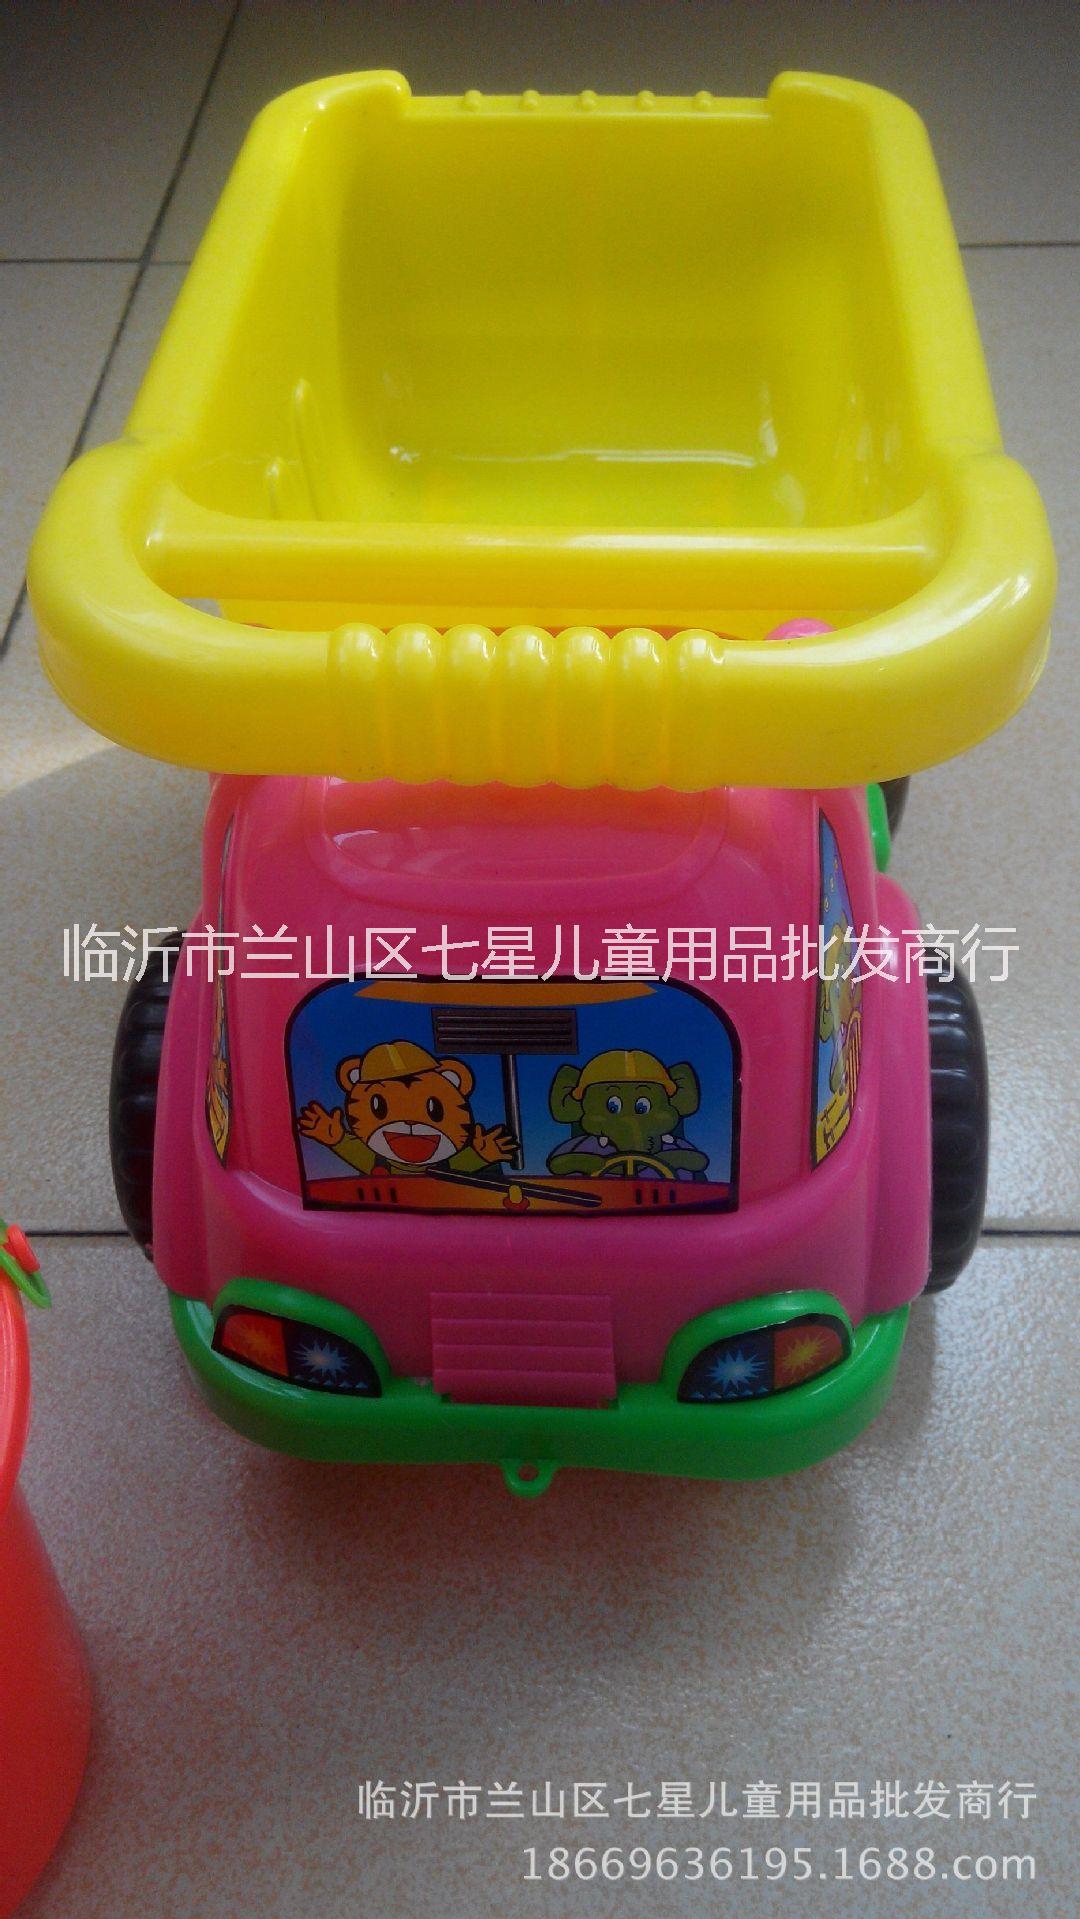 2016新款加厚临沂沙滩玩具批发儿童沙滩车挖图挖沙玩具图片